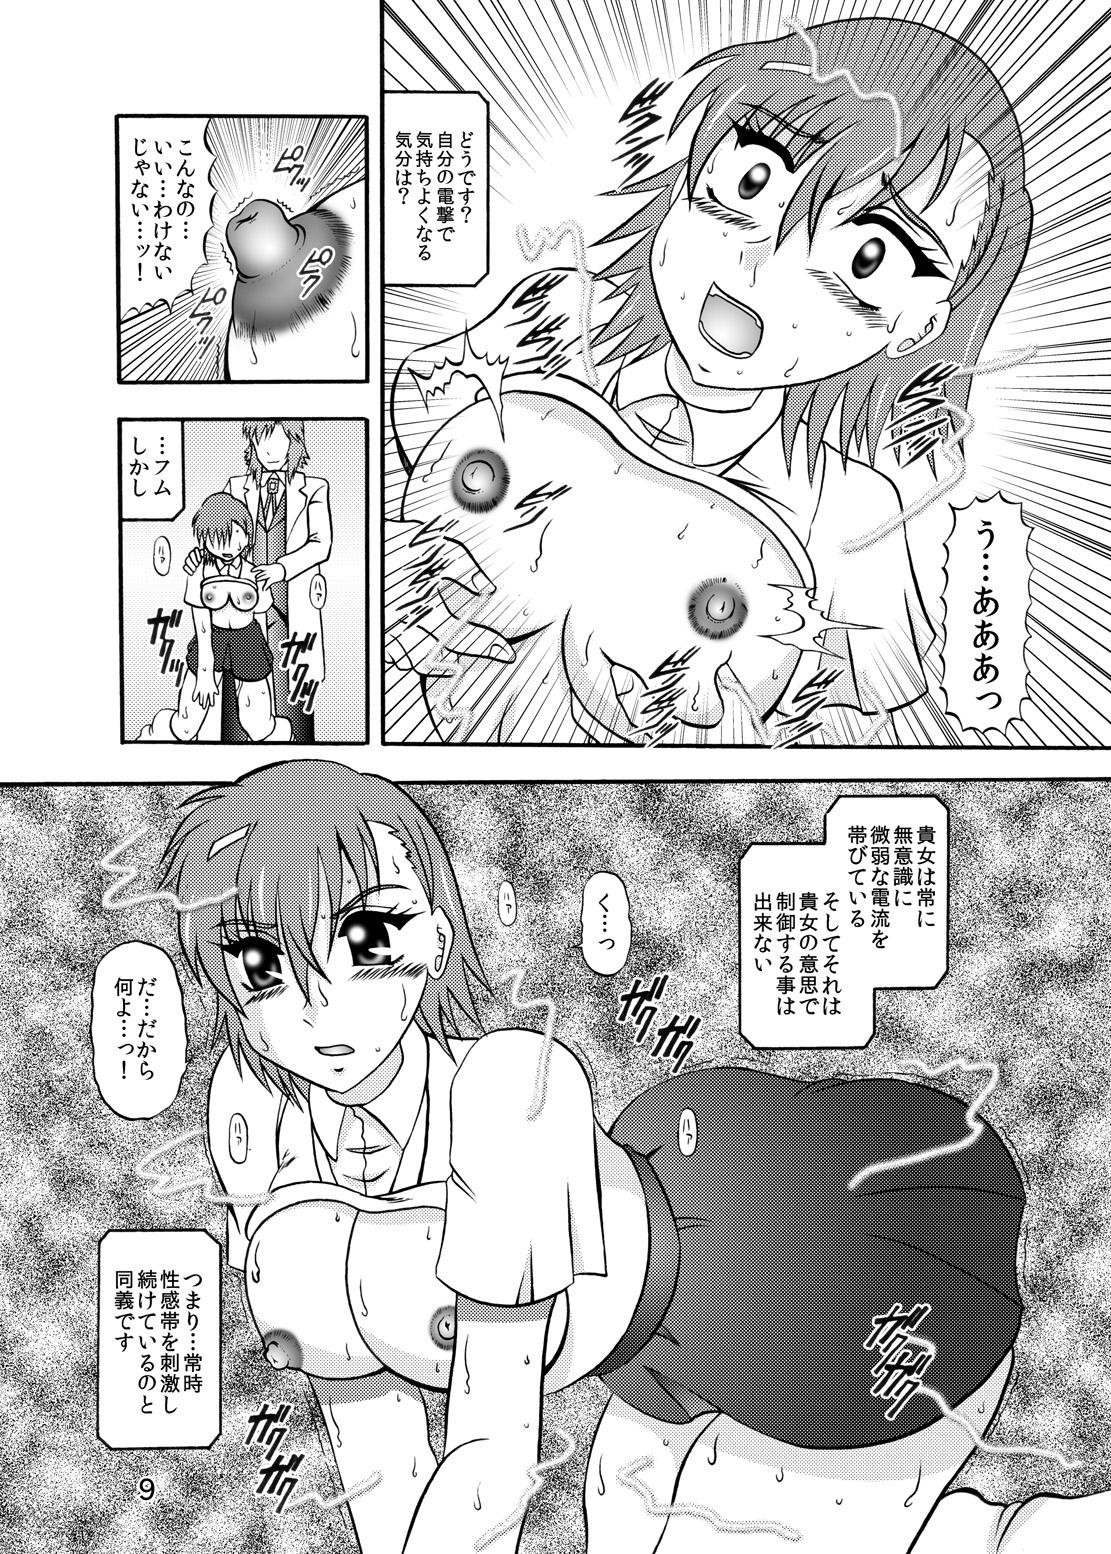 Long Inyoku Kaizou: Misaka Mikoto - Toaru kagaku no railgun Crossdresser - Page 7